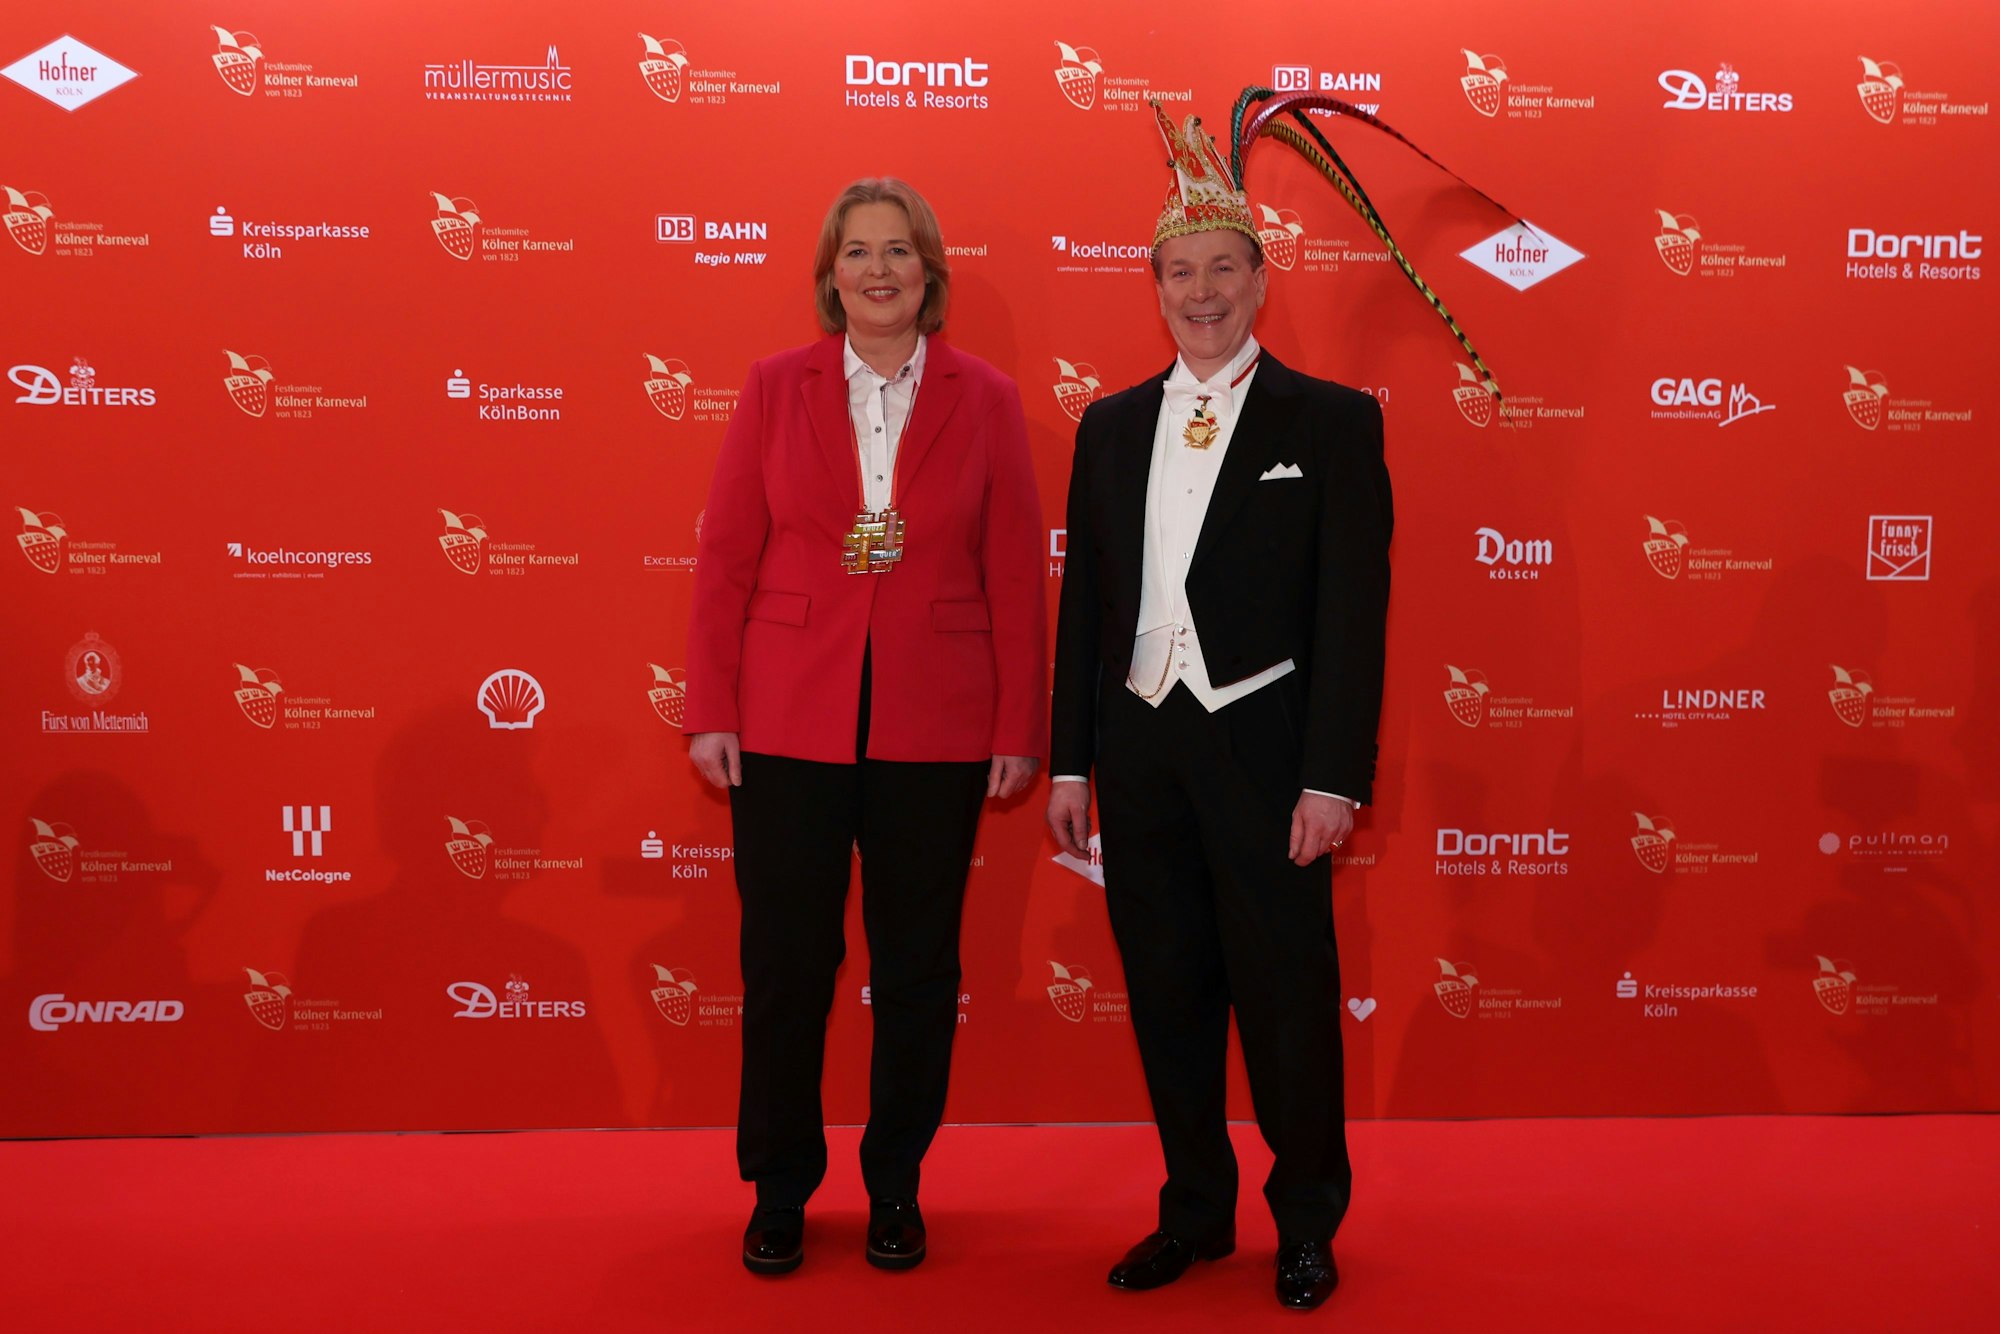 Festkomitee-Präsident Christoph Kuckelkorn und Bundestagspräsidentin Bärbel Bas auf dem roten Teppich in Köln.